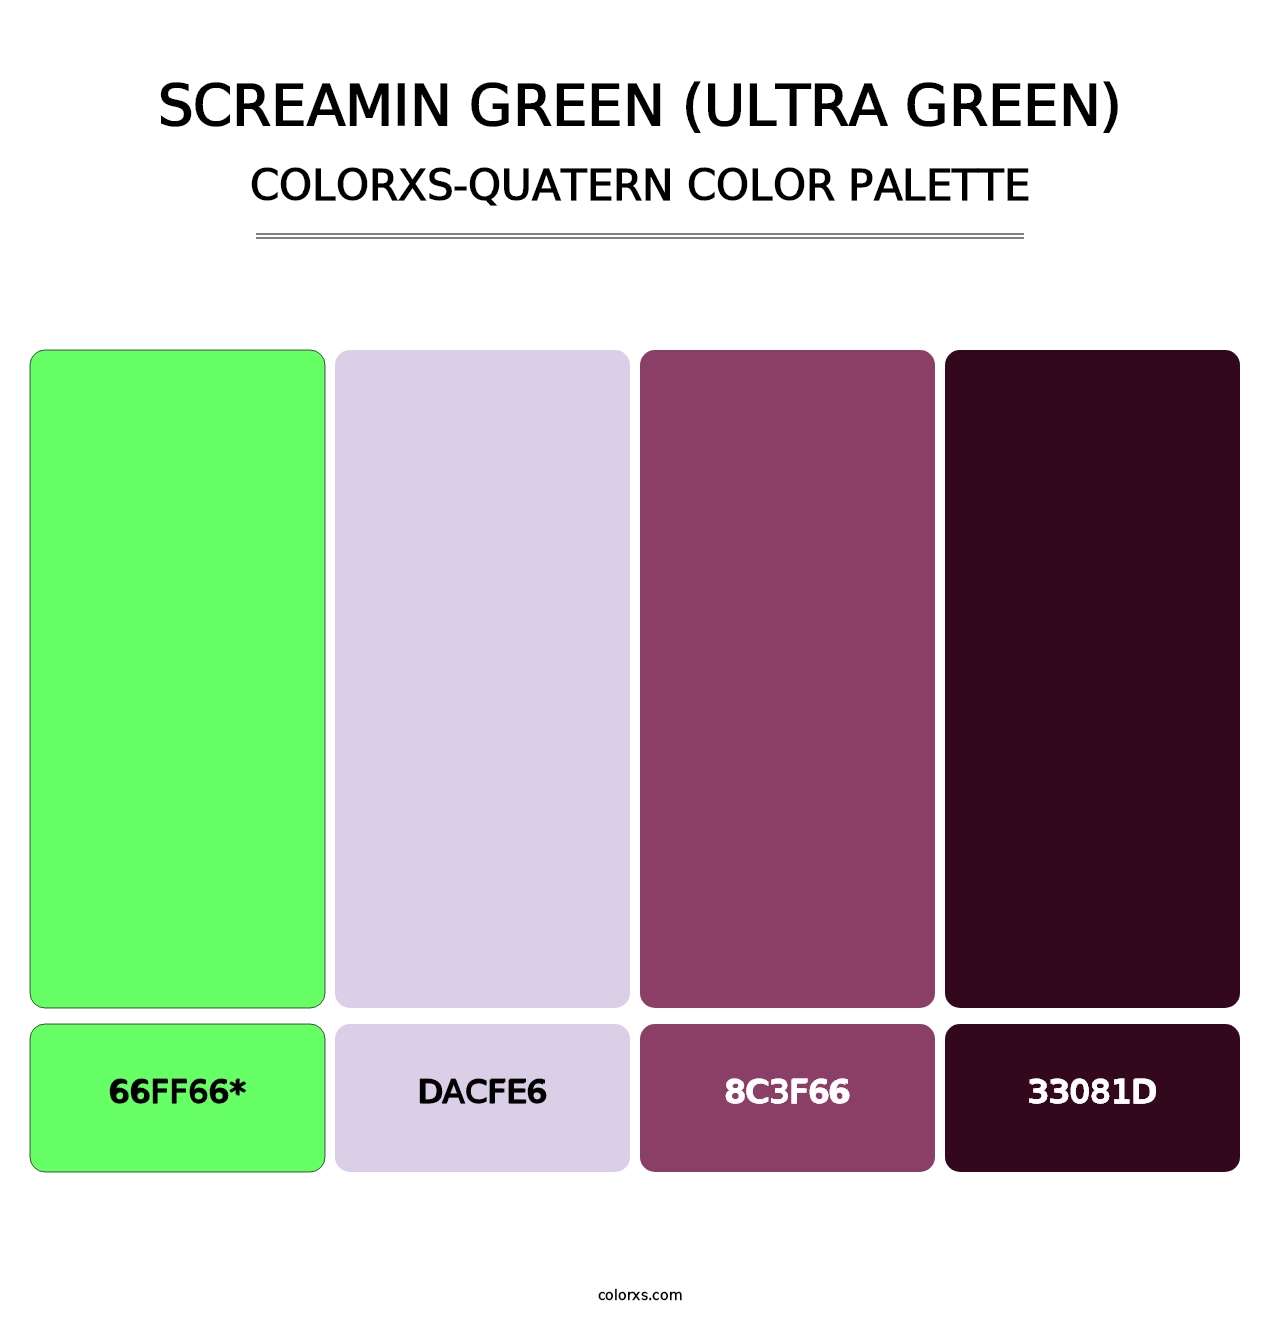 Screamin Green (Ultra Green) - Colorxs Quatern Palette